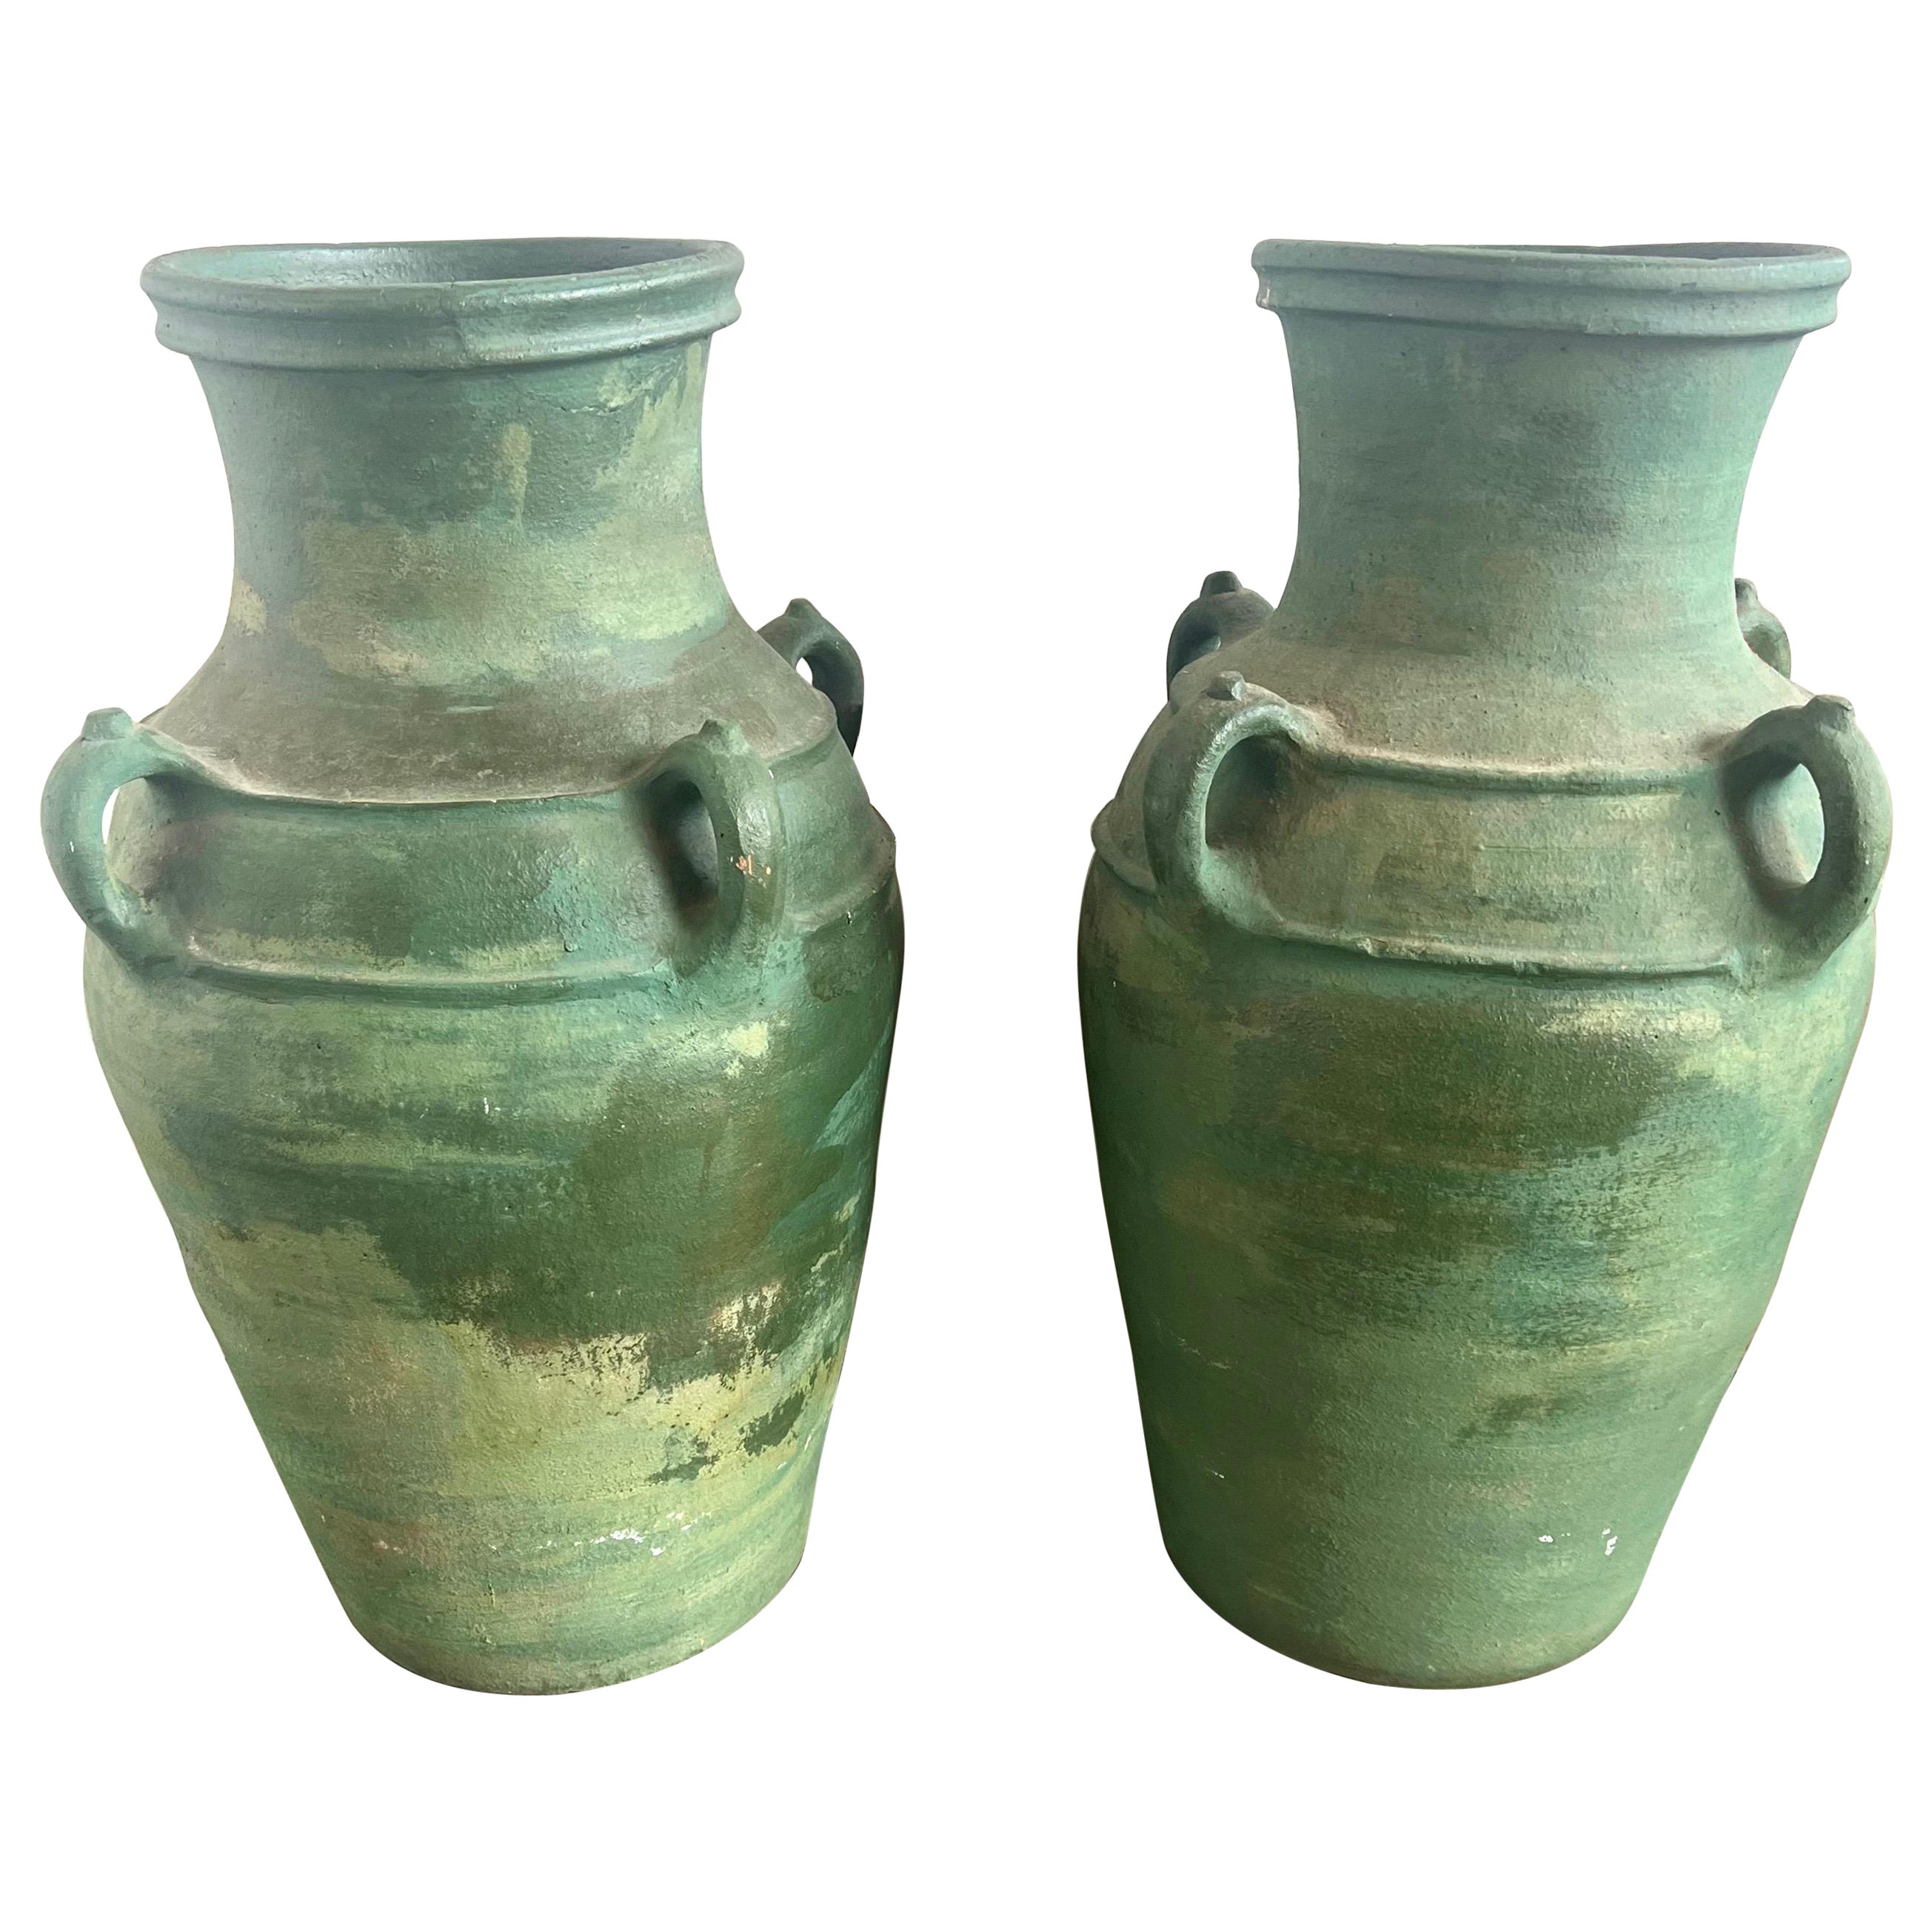 Pair of Italian Glazed Ceramic Urns C. 1930's